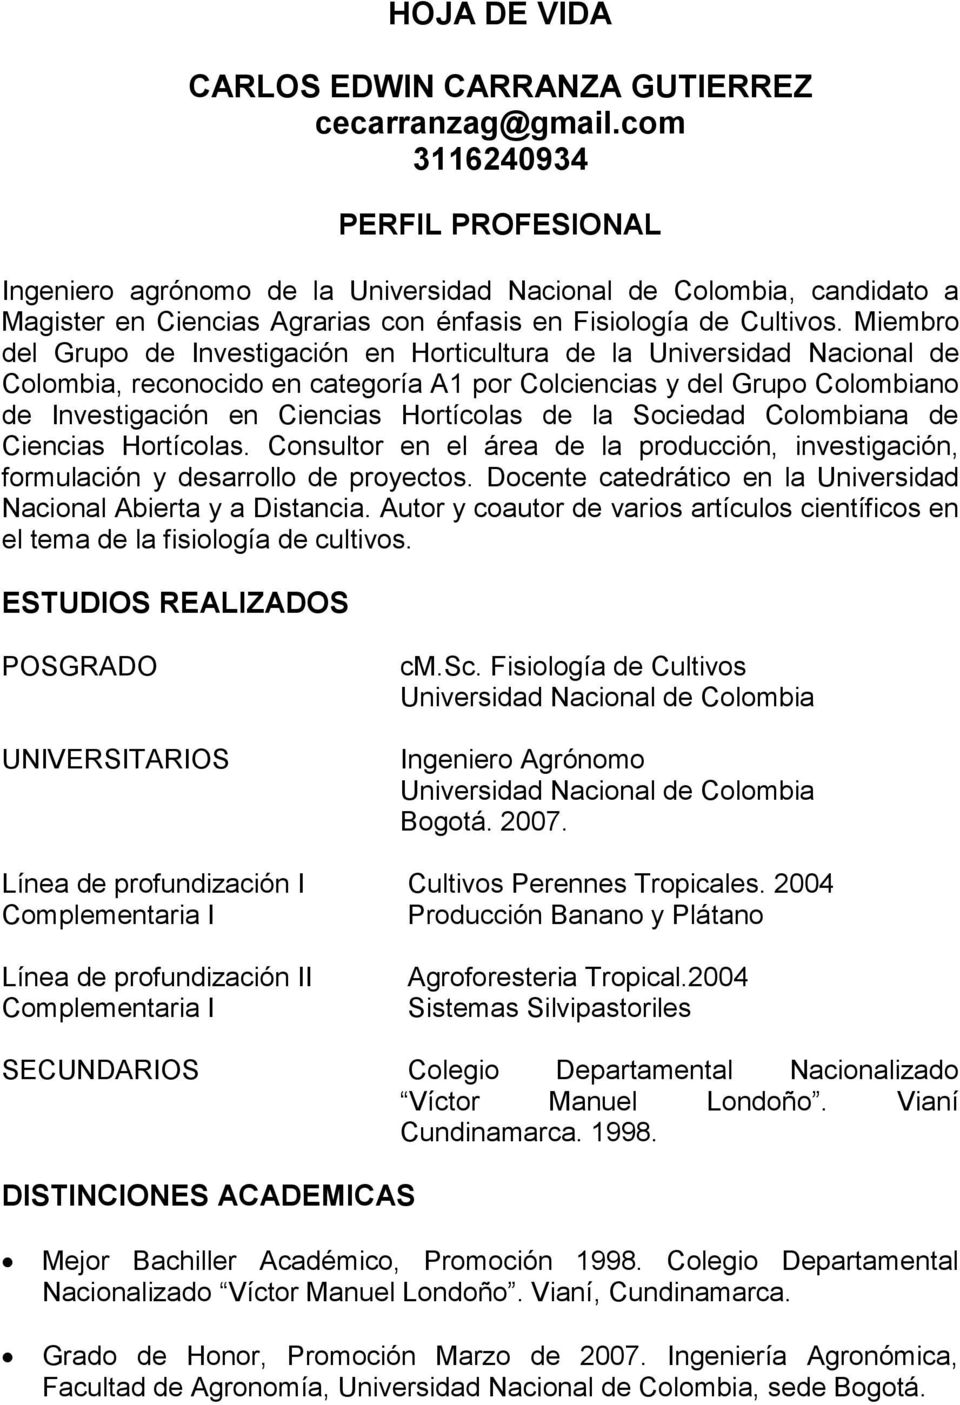 Miembro del Grupo de Investigación en Horticultura de la Universidad Nacional de Colombia, reconocido en categoría A1 por Colciencias y del Grupo Colombiano de Investigación en Ciencias Hortícolas de